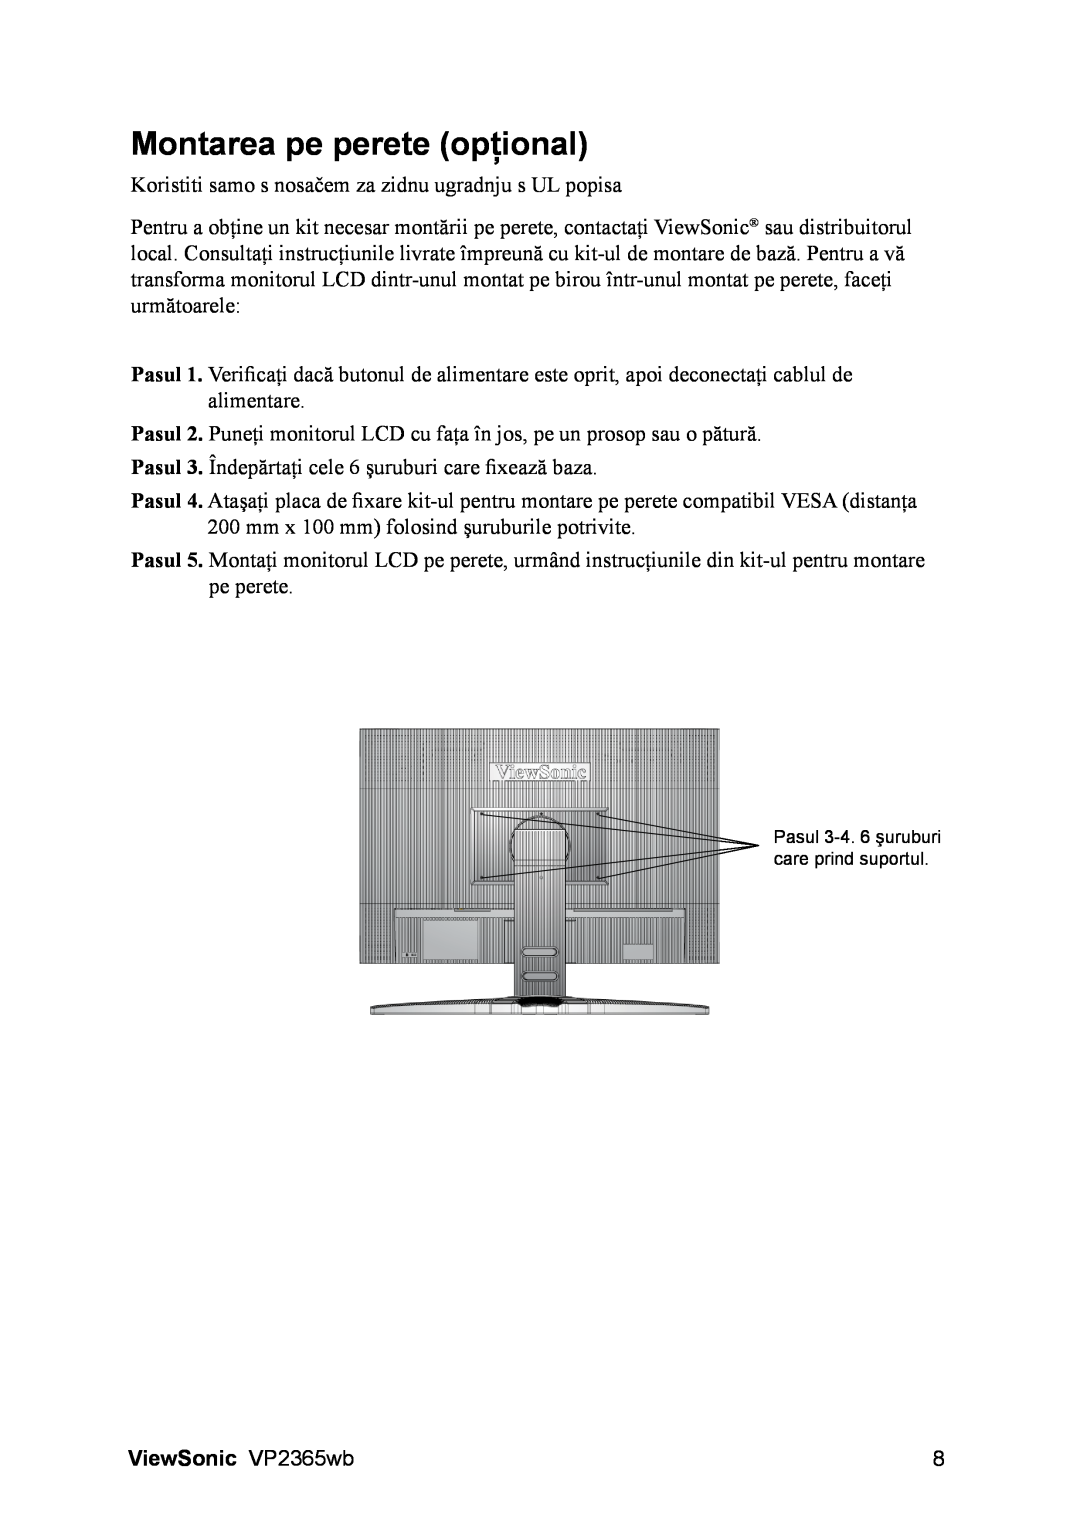 ViewSonic VS12637 manual Montarea pe perete opţional, ViewSonic VP2365wb, Pasul 3-4.6 şuruburi care prind suportul 